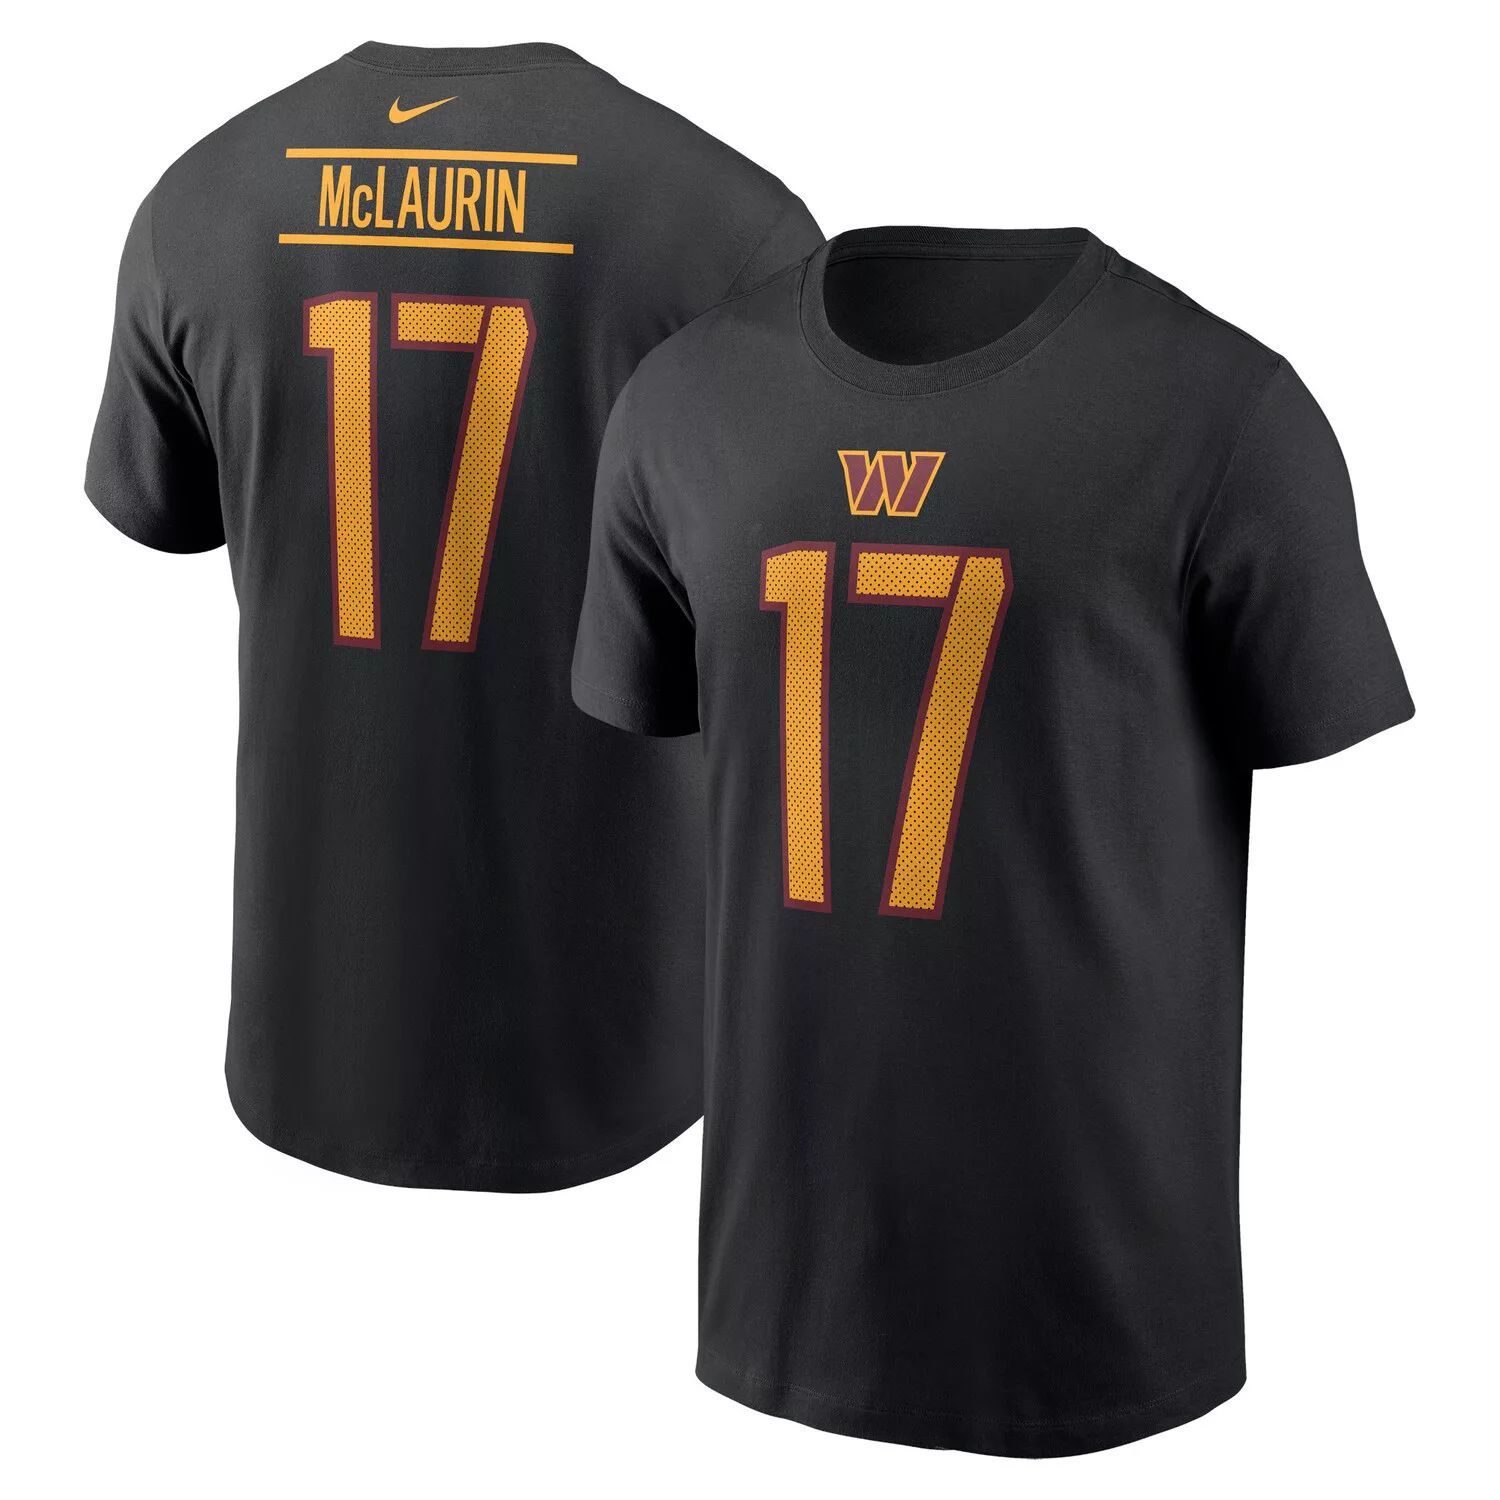 Мужская черная футболка Terry McLaurin Washington Commanders с именем и номером игрока Nike